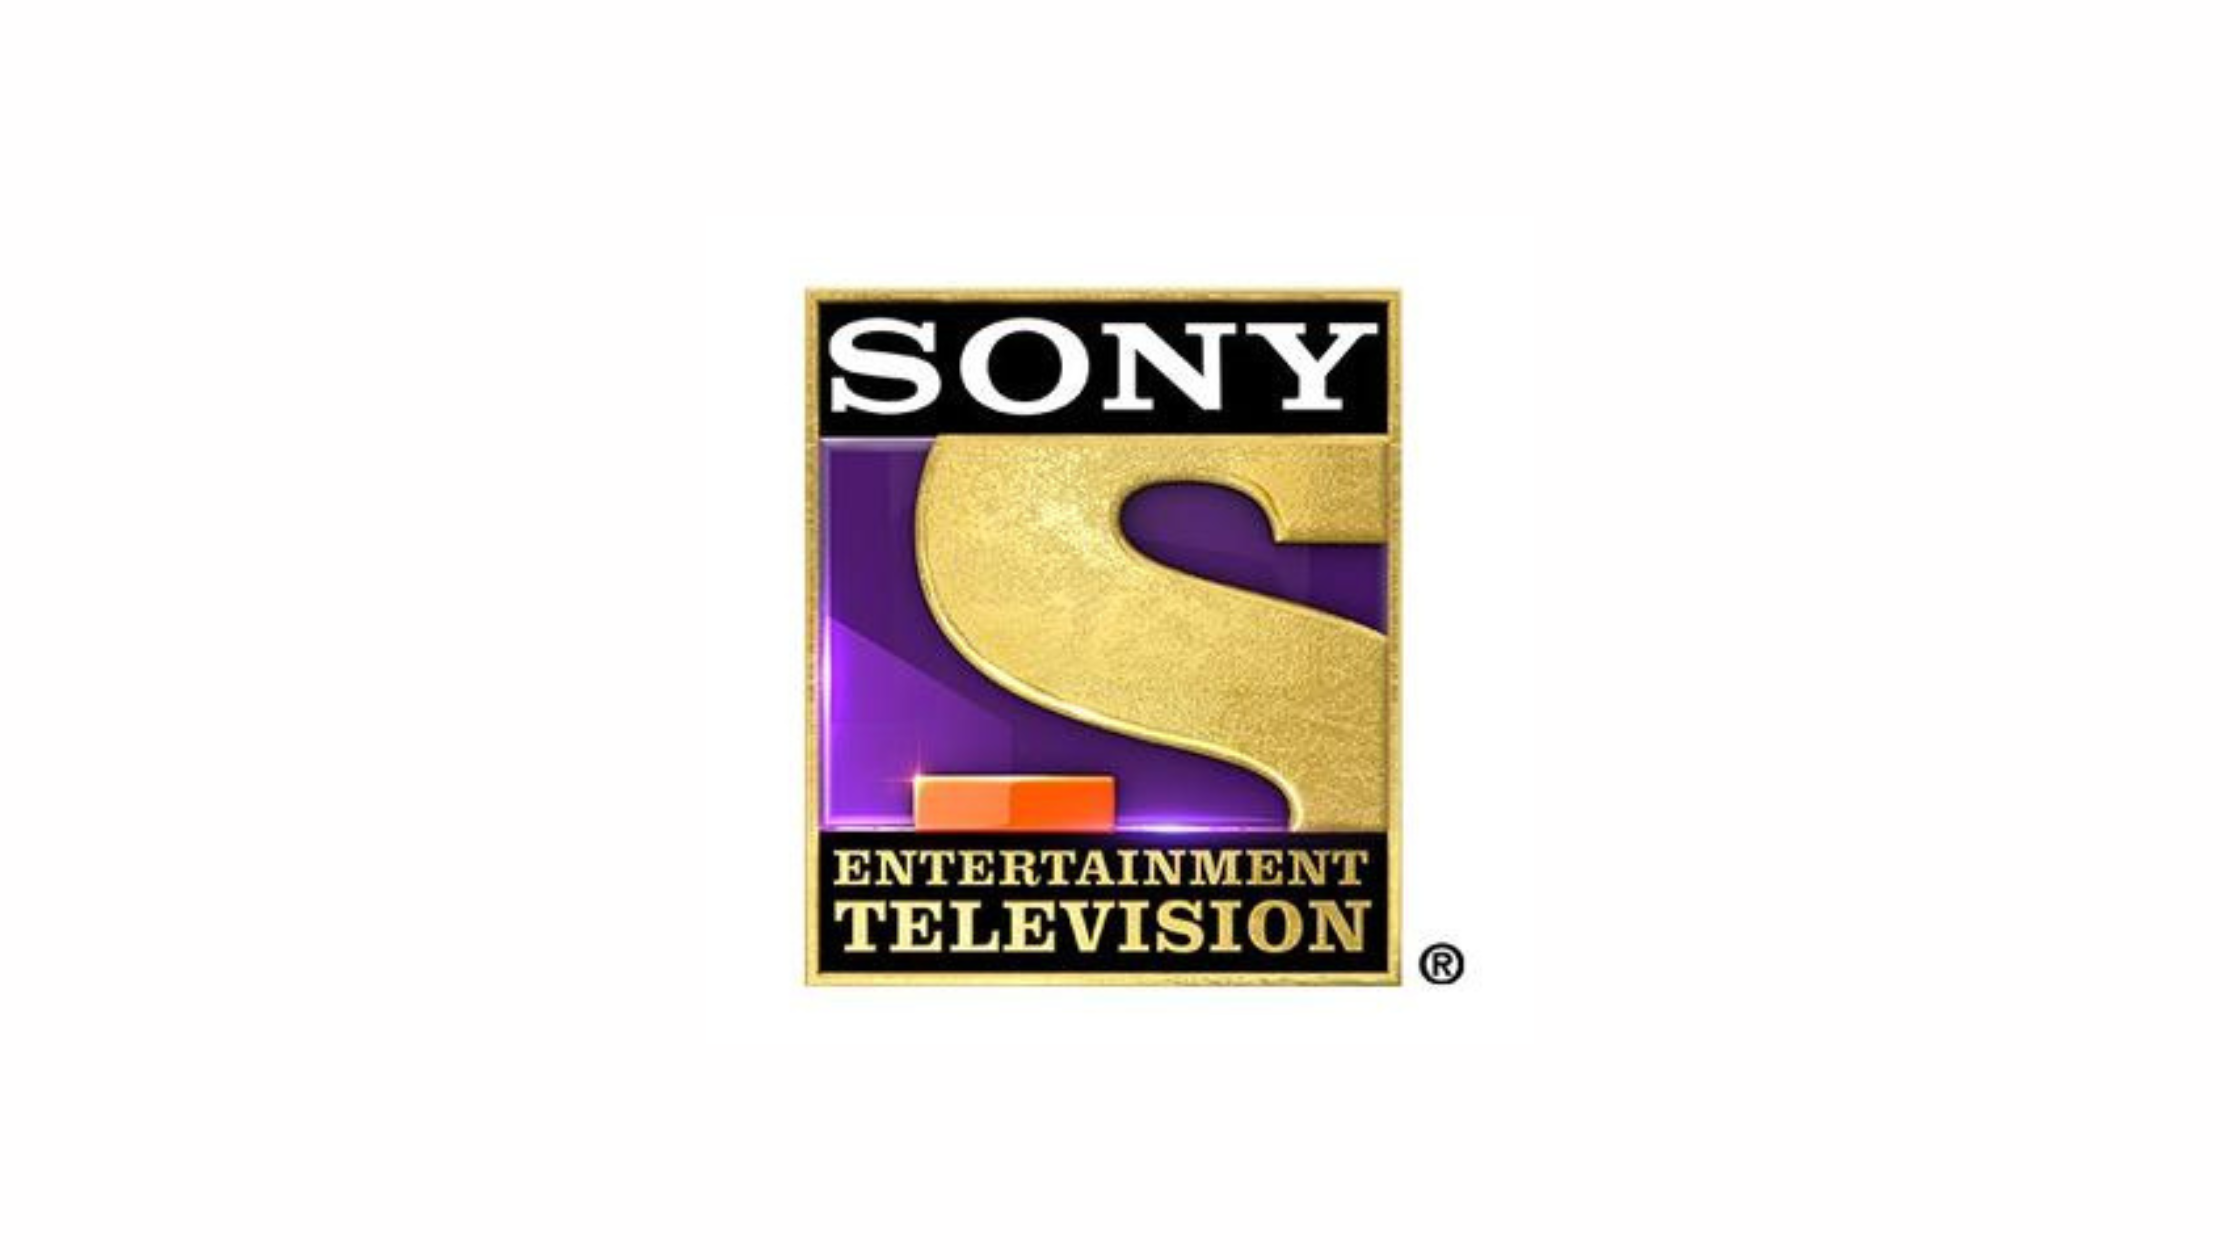 Sony Entertainment Televisio